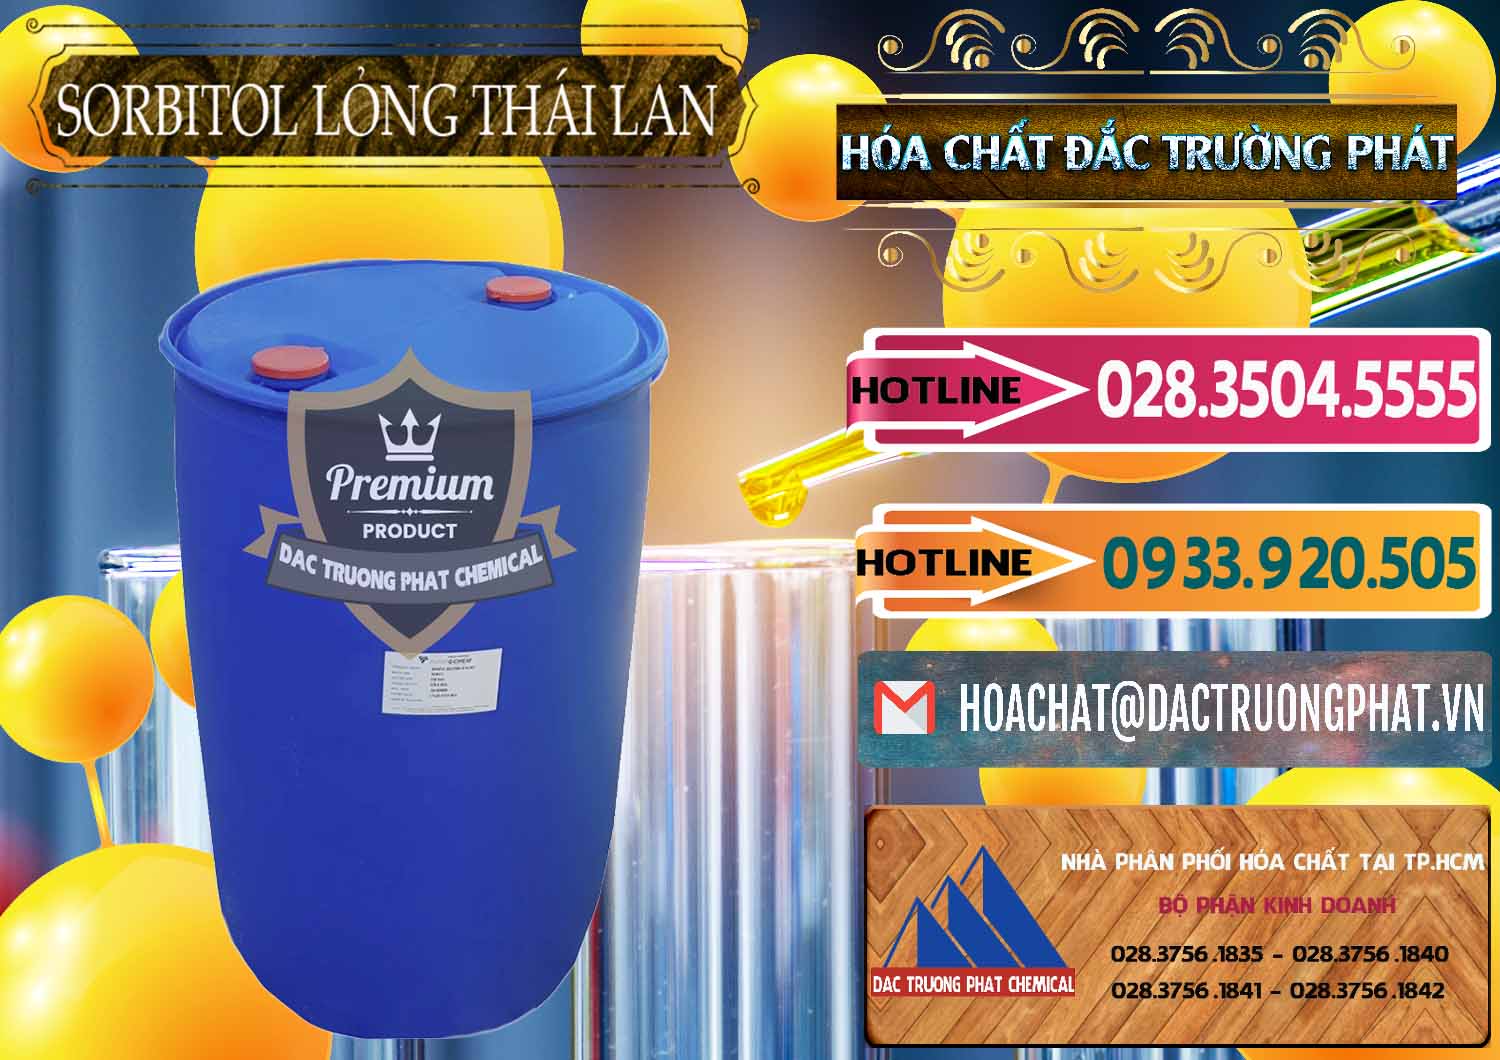 Cty chuyên bán & cung cấp Sorbitol - C6H14O6 Lỏng 70% Food Grade Thái Lan Thailand - 0341 - Cty phân phối và cung cấp hóa chất tại TP.HCM - dactruongphat.vn